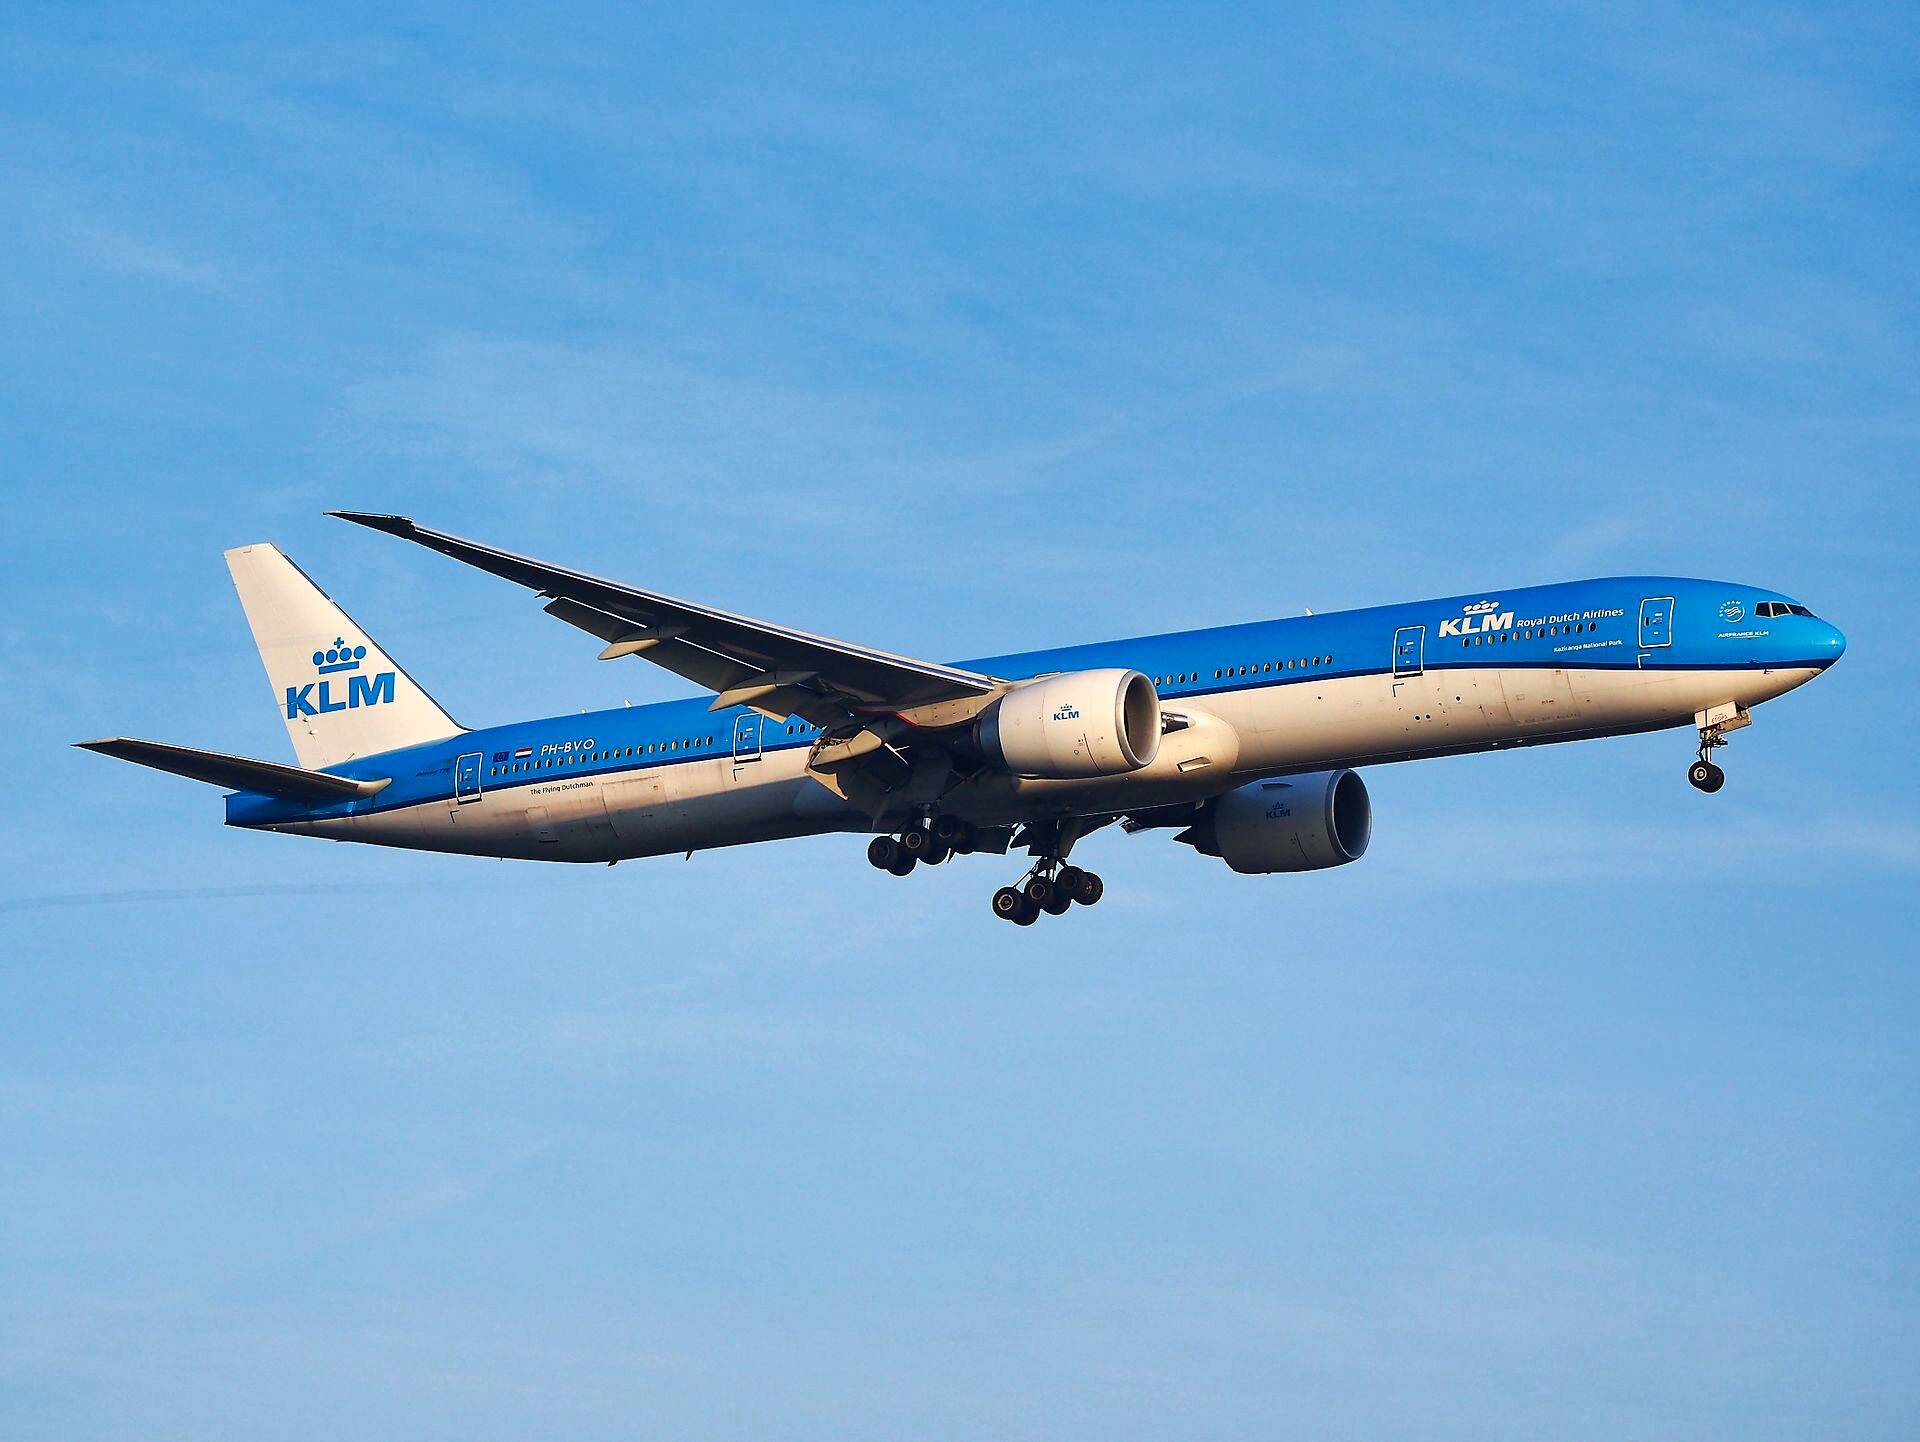 Günstige Flüge ✈️ KLM-Royal Dutch Airlines (KL)